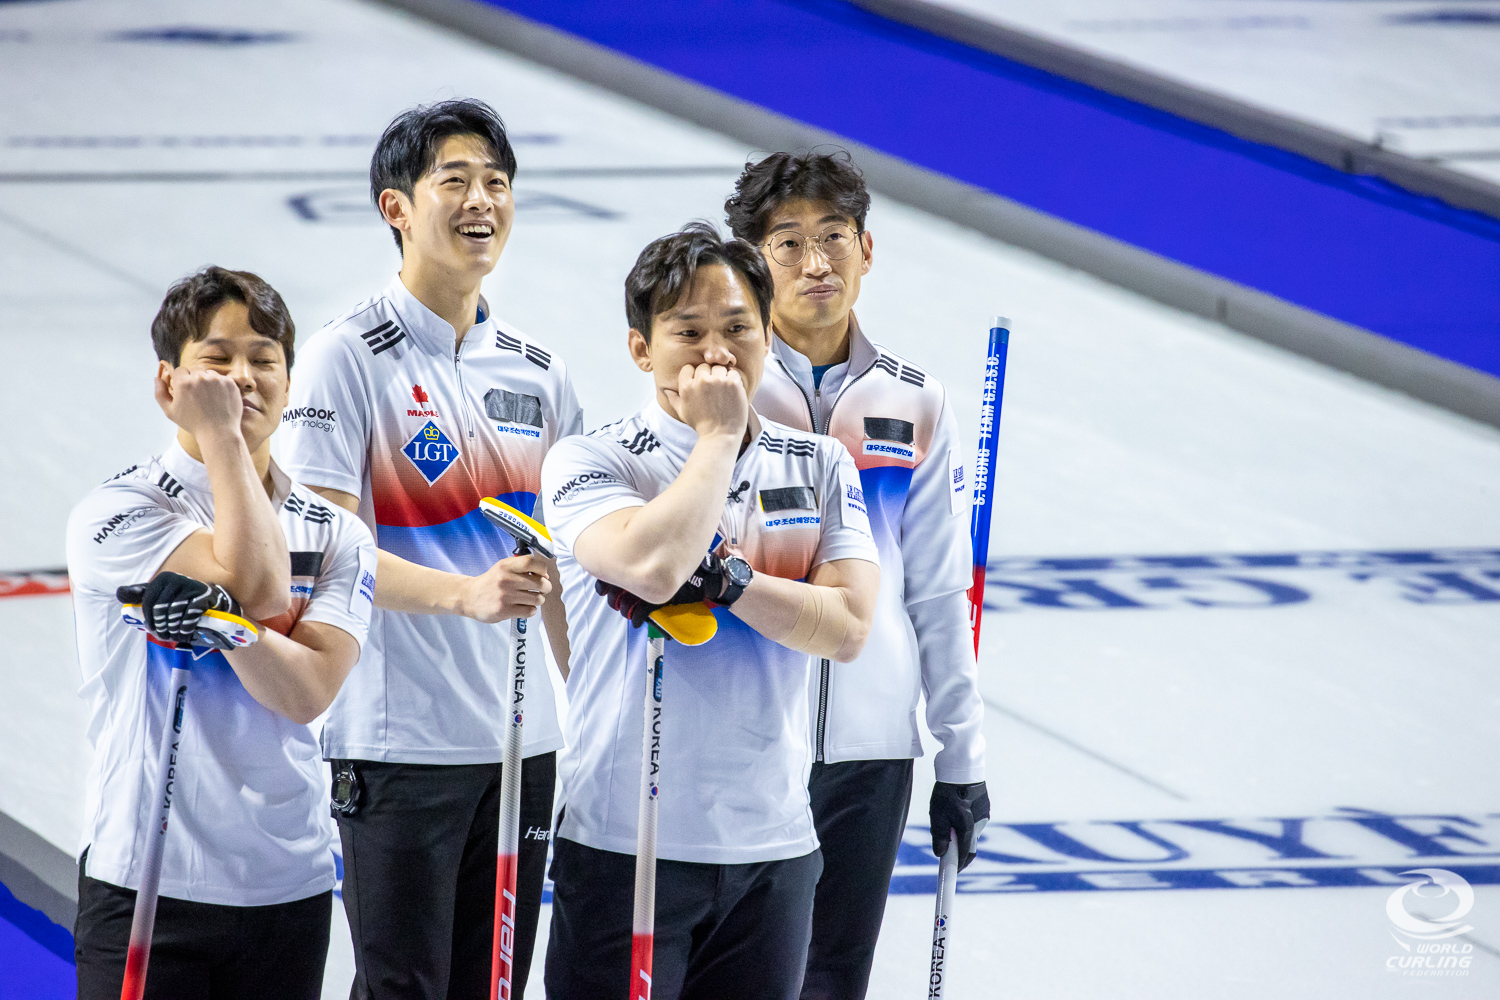 Gyeongbuk Sports Council among leaders at Korean Curling Championships